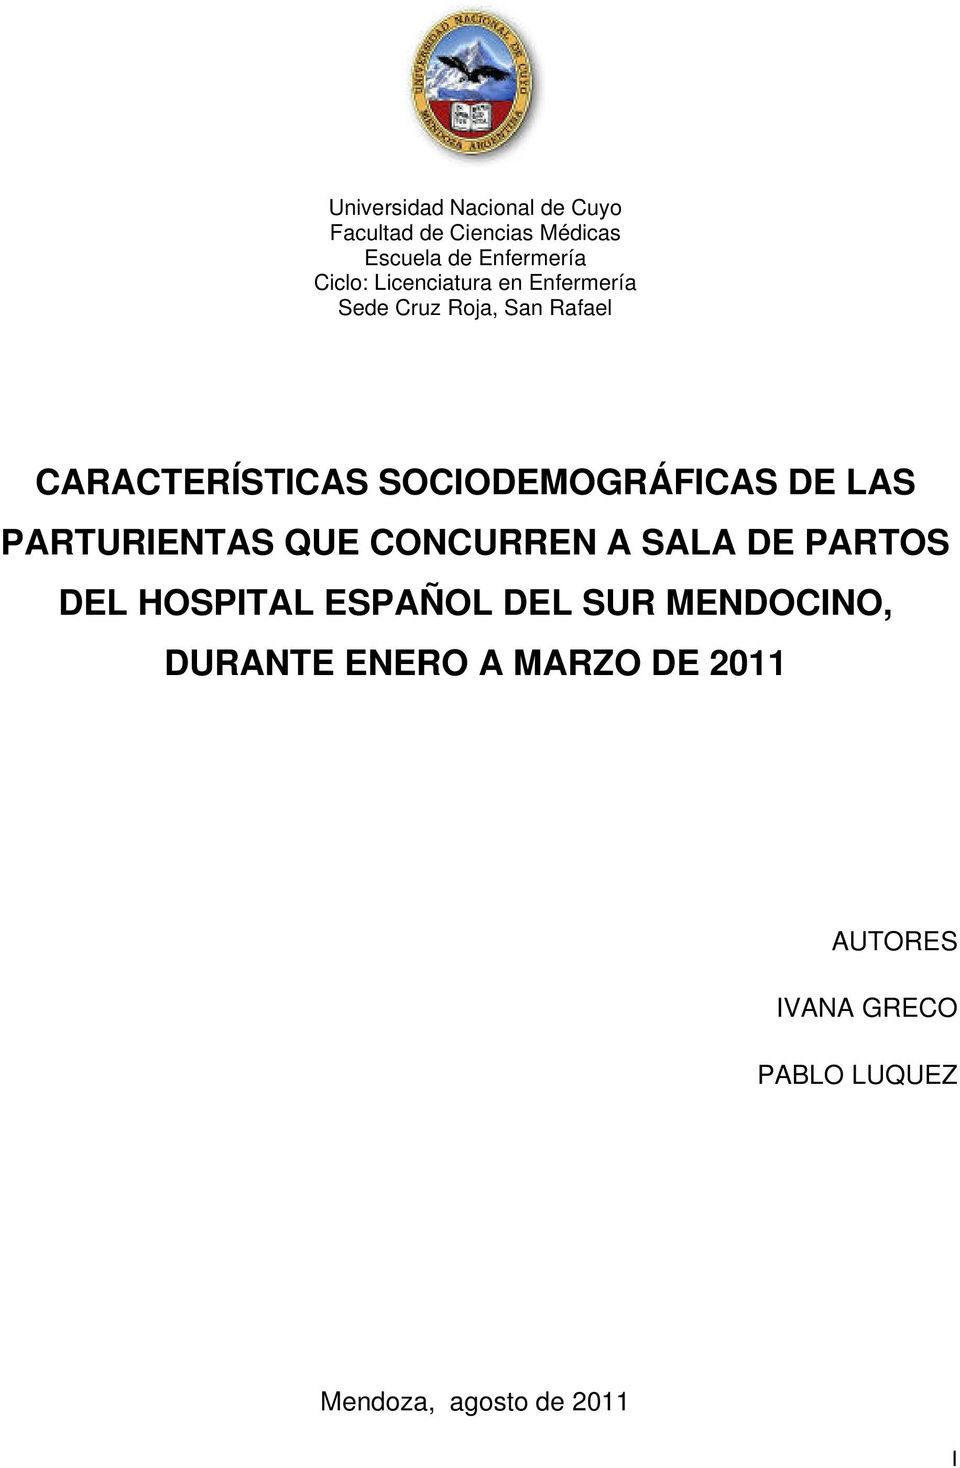 DE LAS PARTURIENTAS QUE CONCURREN A SALA DE PARTOS DEL HOSPITAL ESPAÑOL DEL SUR